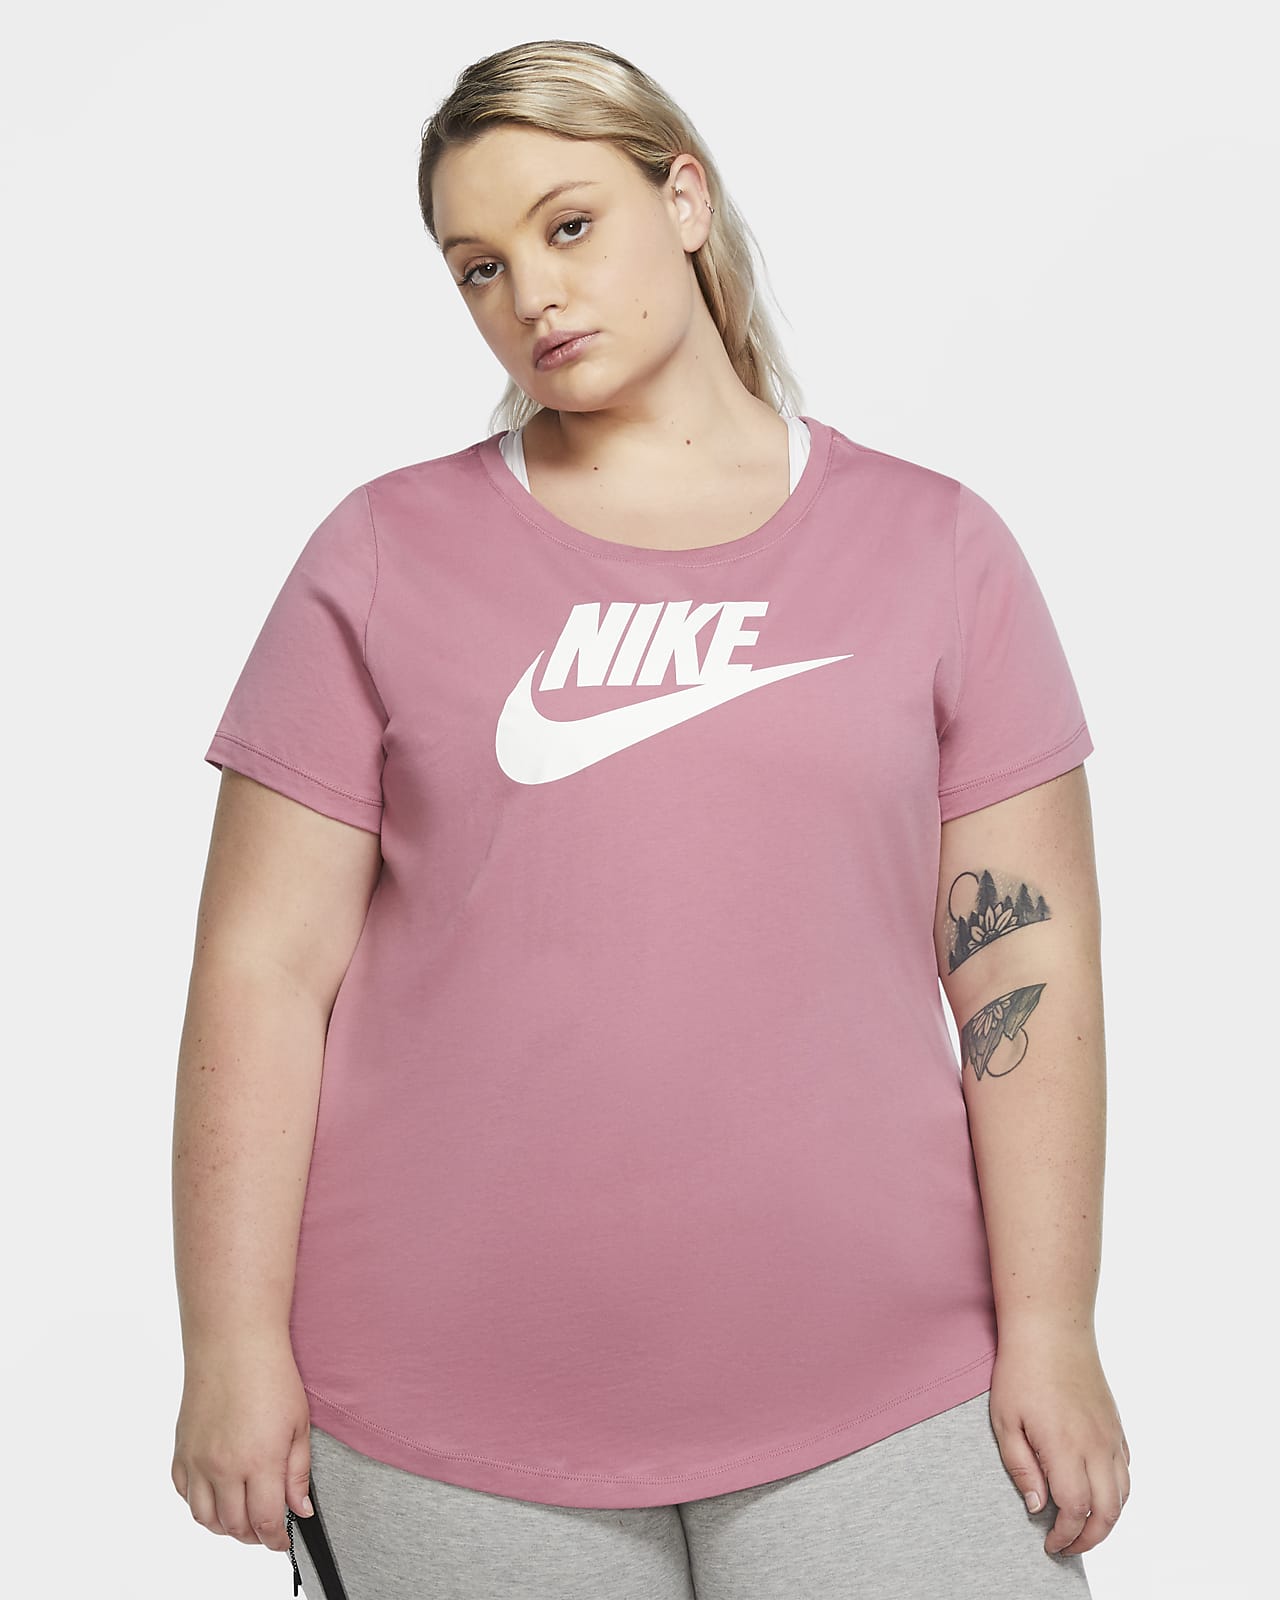 pink nike plus size shirt